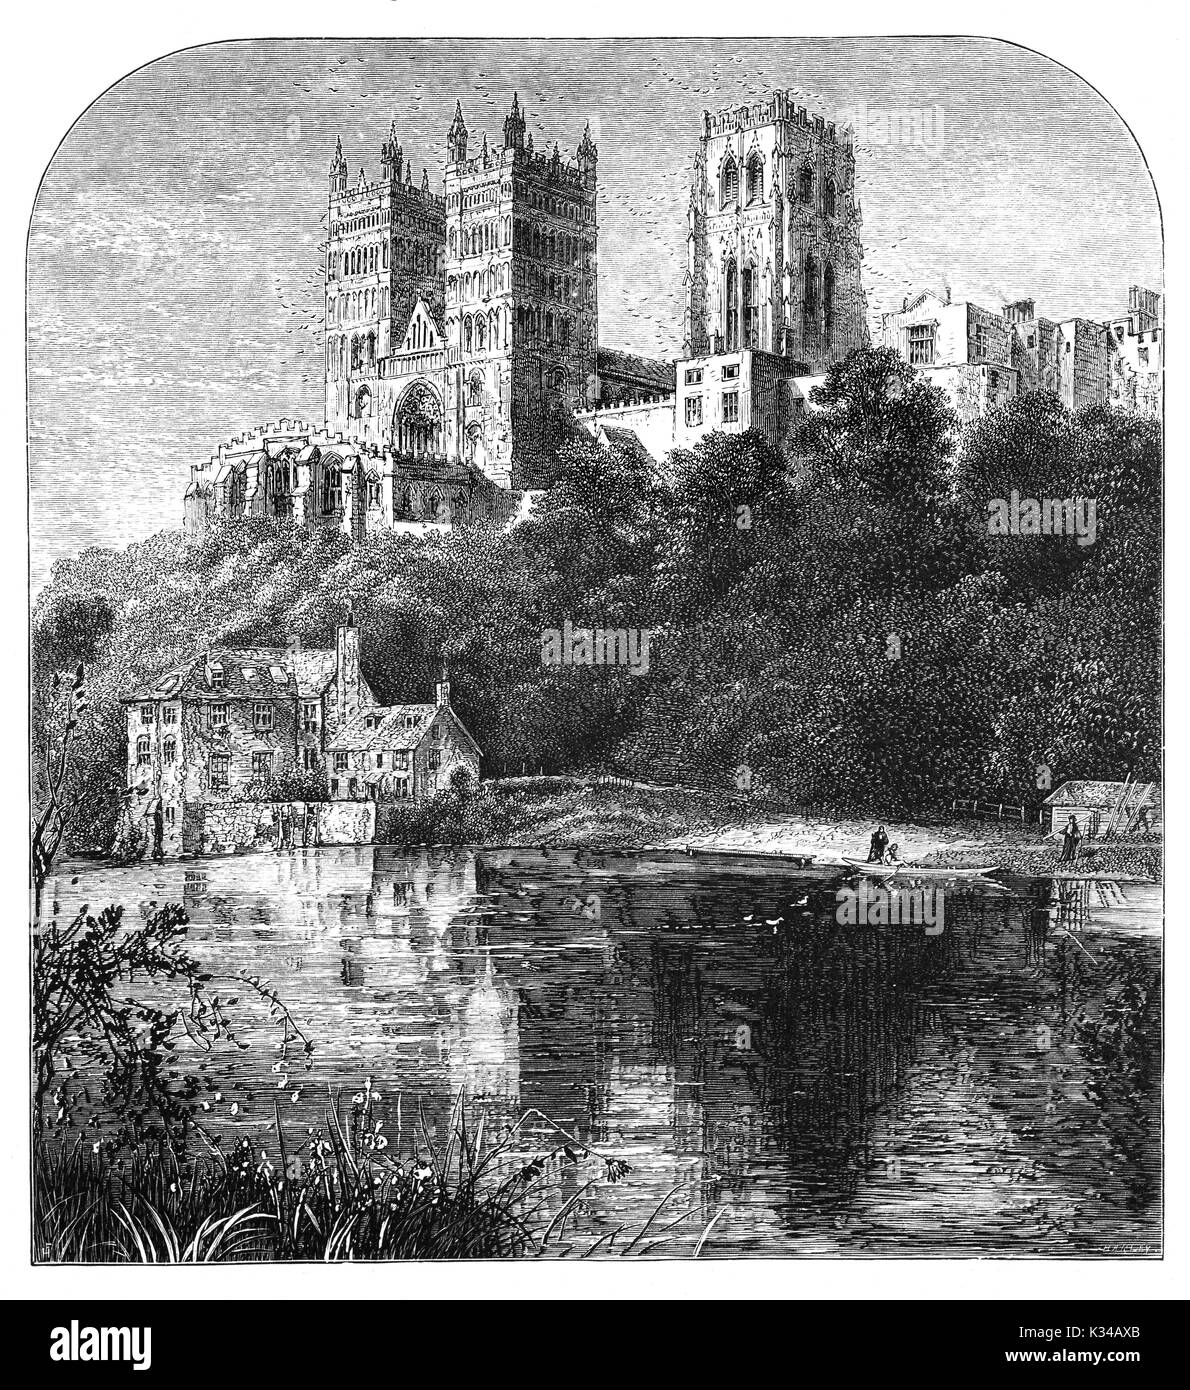 1870 : la cathédrale de l'Église du Christ, la Bienheureuse Marie la Vierge et Saint Cuthbert de Durham, généralement connu sous le nom de Cathédrale de Durham et d'accueil du Sanctuaire de St Cuthbert, de l'autre côté de la rivière l'usure. La cathédrale date de AD1093 et est considéré comme l'un des plus beaux exemples d'architecture normande et a été désigné site du patrimoine mondial de l'UNESCO, County Durham, Angleterre Banque D'Images